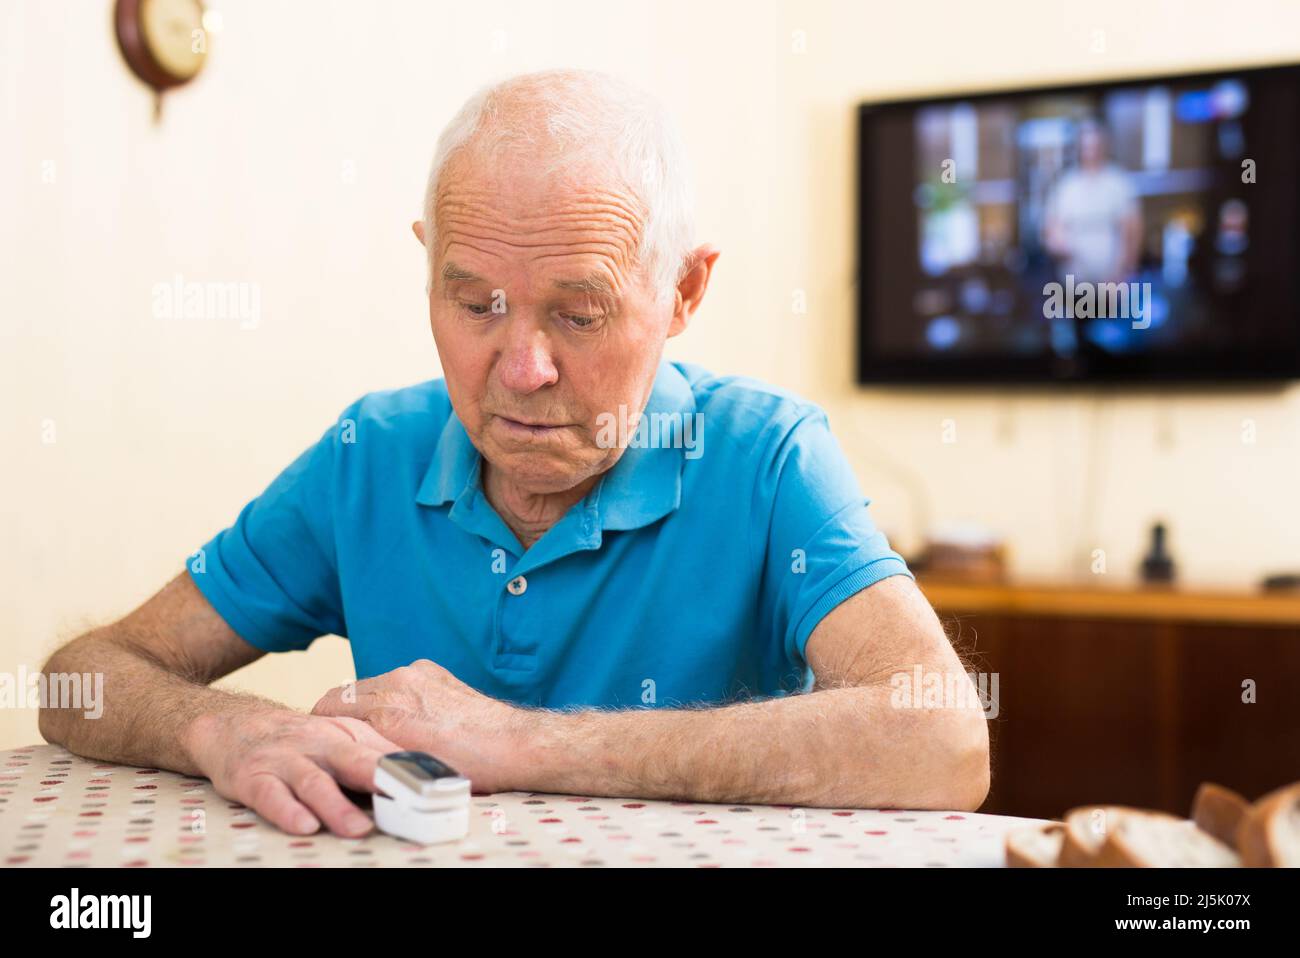 Fokussierter besorgter älterer Mann, der sich mit Hilfe des Pulsoximeters am heimischen Tisch selbst die Sauerstoffsättigung misst. Selbstkontrollkonzept für die Gesundheit Stockfoto